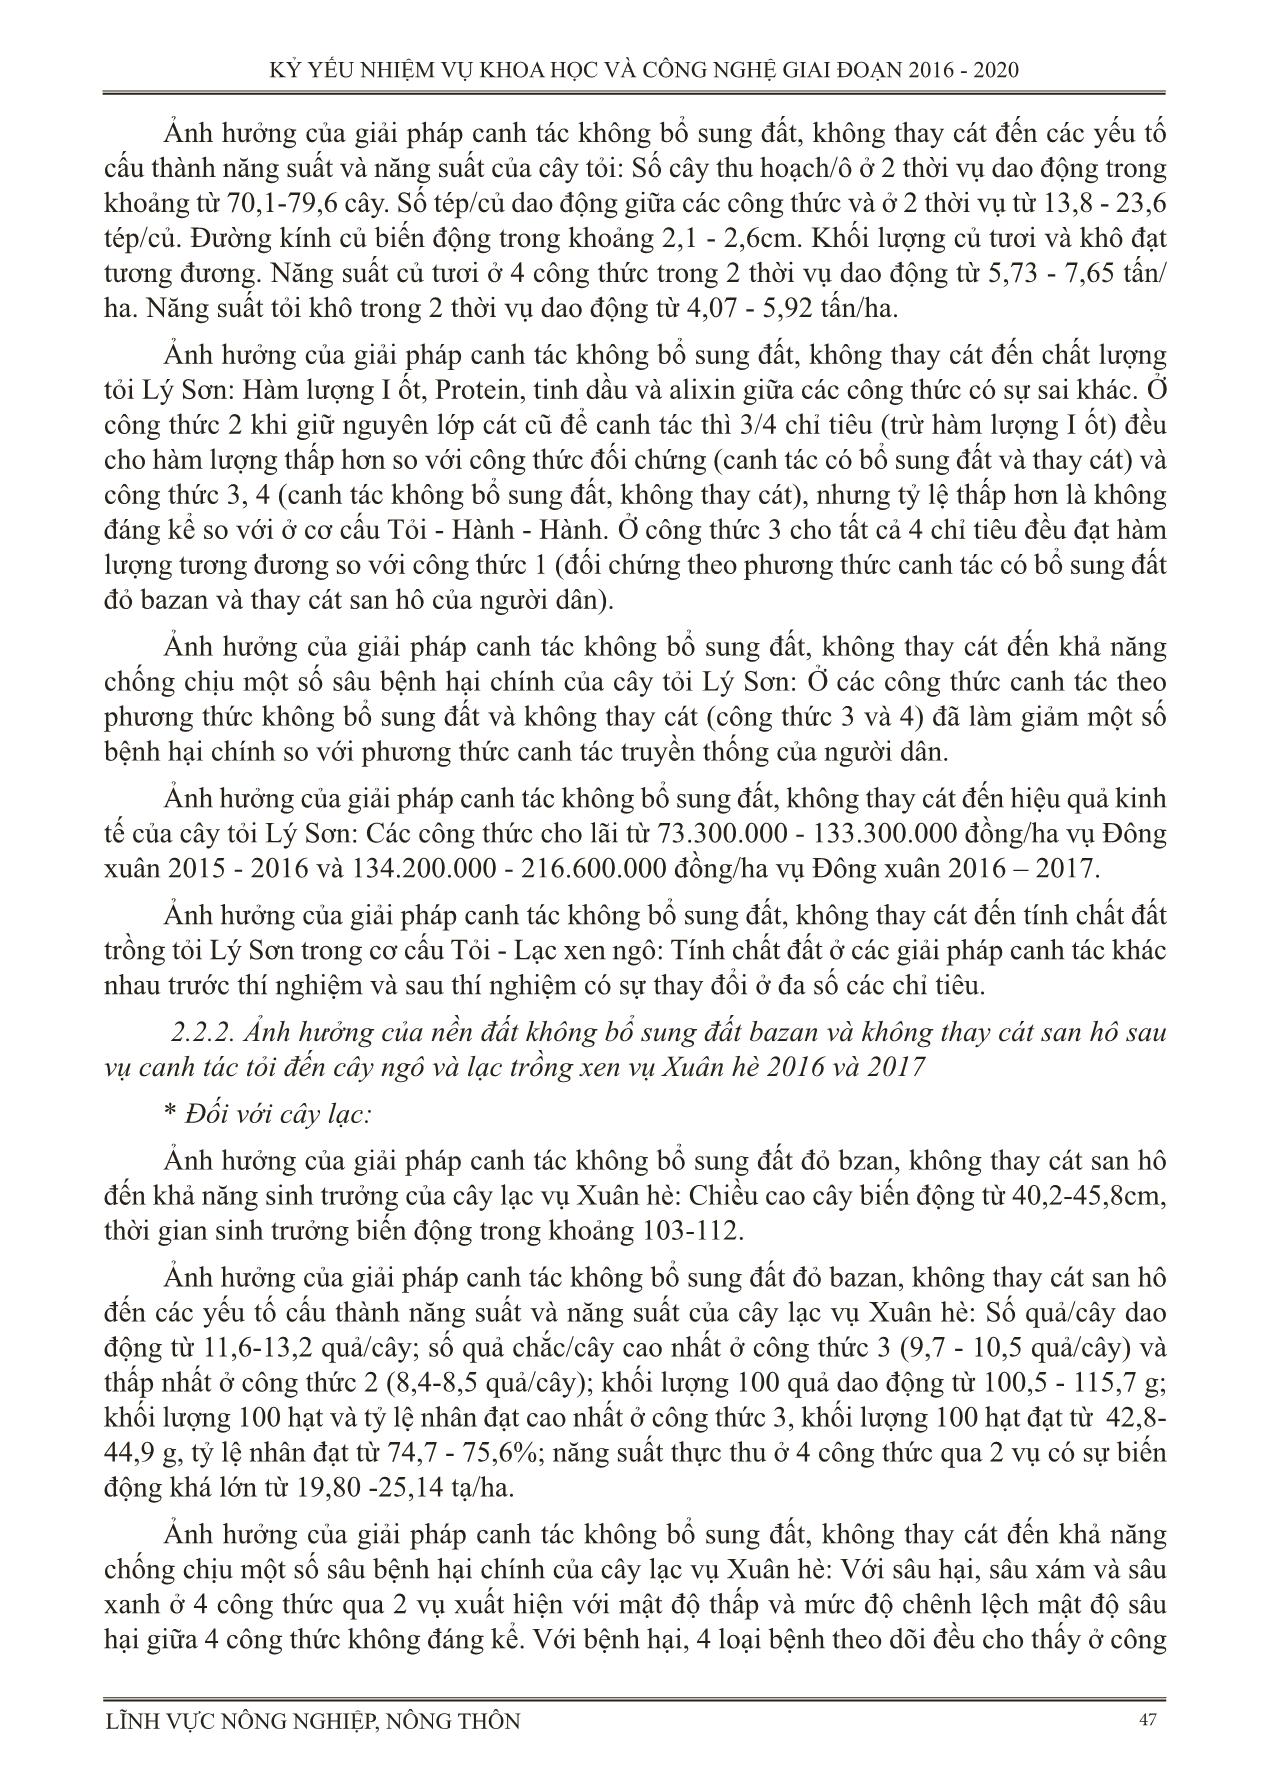 Thực nghiệm các giải pháp kỹ thuật trong canh tác tỏi ở huyện đảo Lý Sơn tỉnh Quảng Ngãi (Canh tác tỏi không bổ sung đất, không thay cát) trang 5